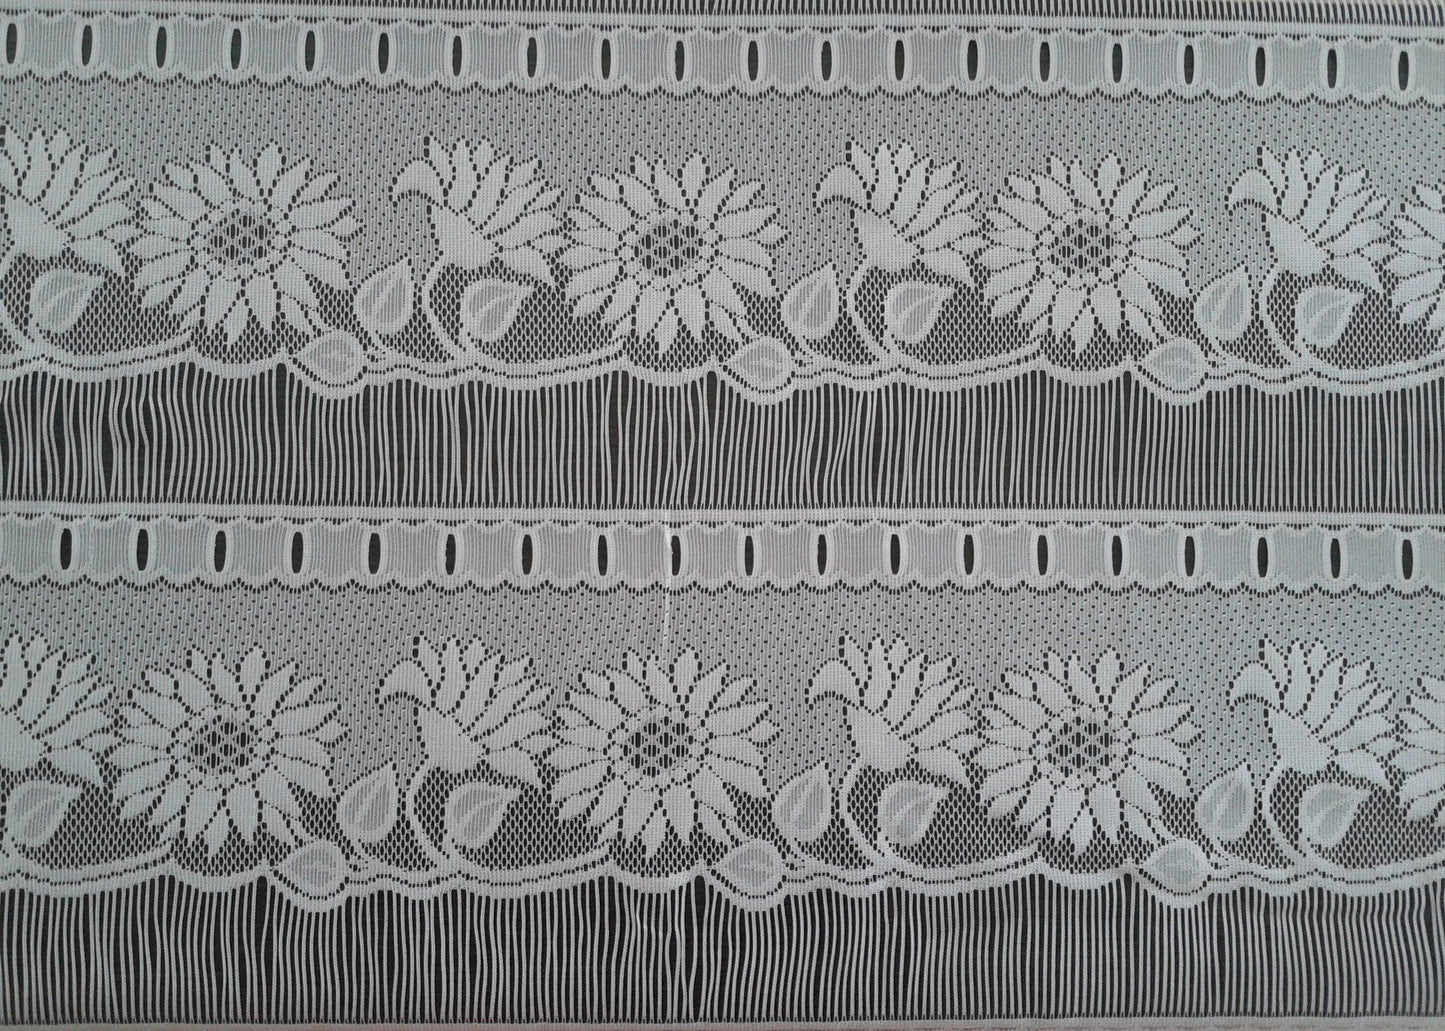 Rideau voilage blanc motif Tournesol (Zoom)